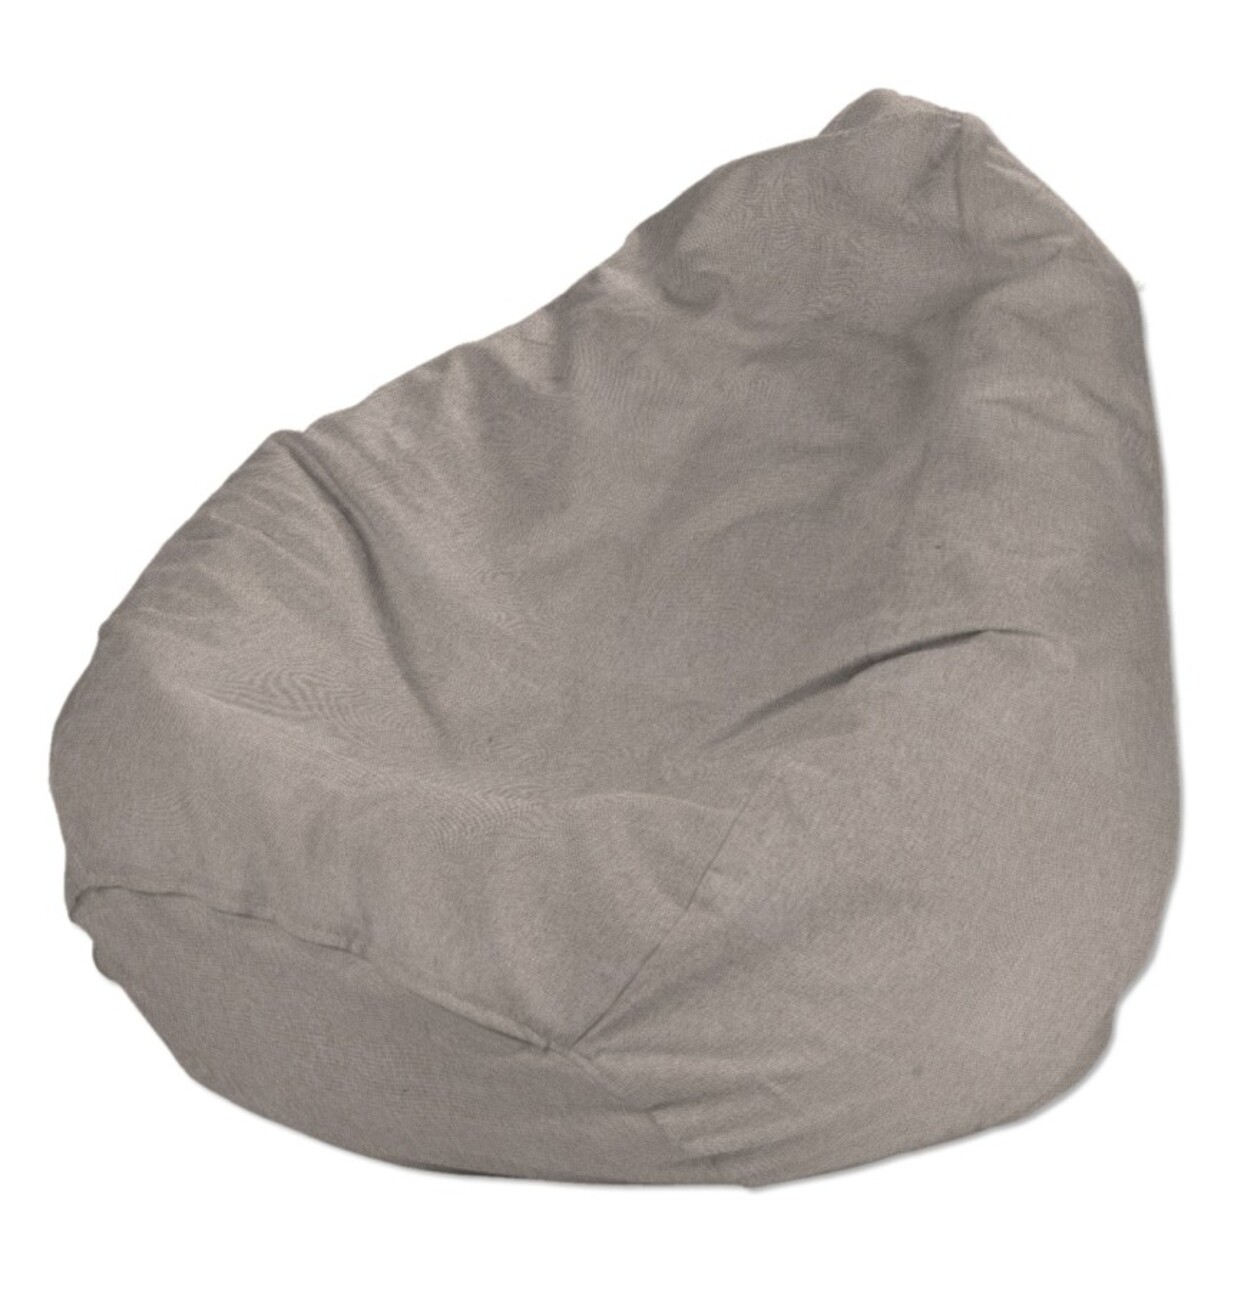 Bezug für Sitzsack, beige-grau, Bezug für Sitzsack Ø60 x 105 cm, Etna (705- günstig online kaufen